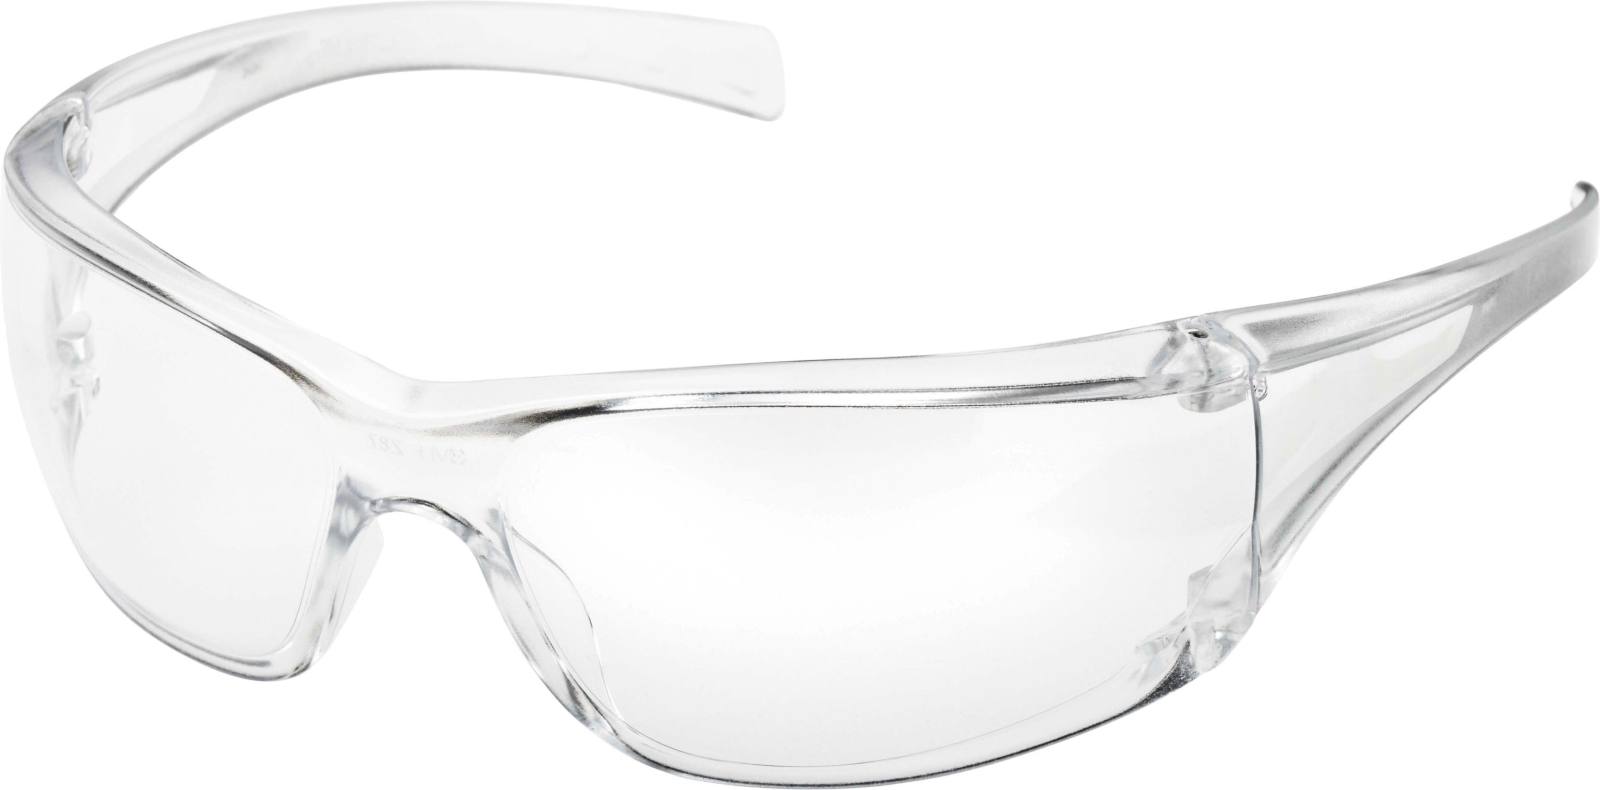 3M Virtua AF Schutzbrille, Antikratz-/Antibeschlag-Beschichtung, klare Scheibe, 715001AF-BULK